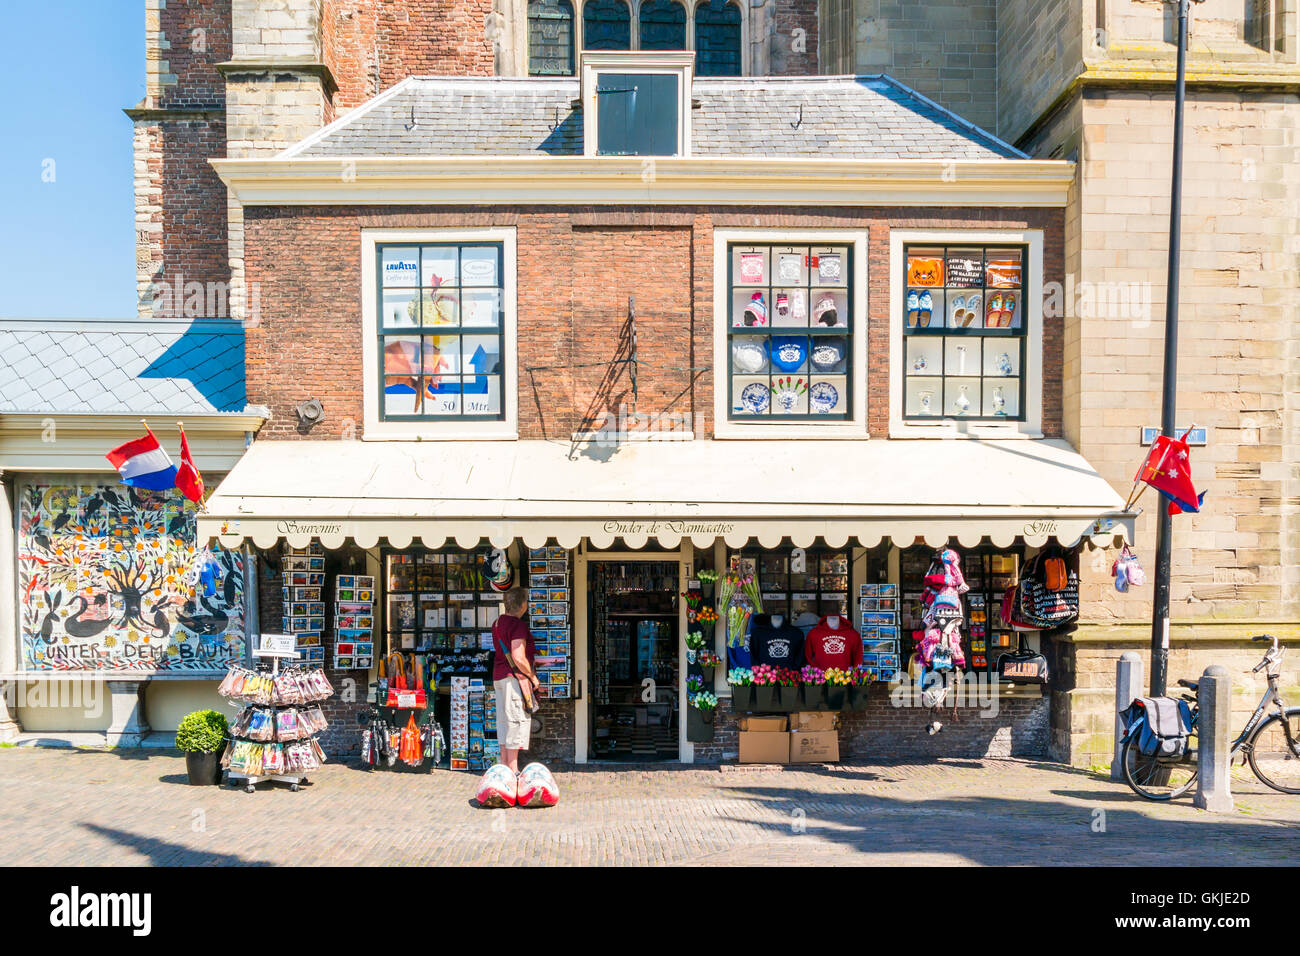 Cadeau souvenir shop dans Lepelstraat près de Grote Markt place du marché dans la vieille ville de Haarlem, Hollande, Pays-Bas Banque D'Images